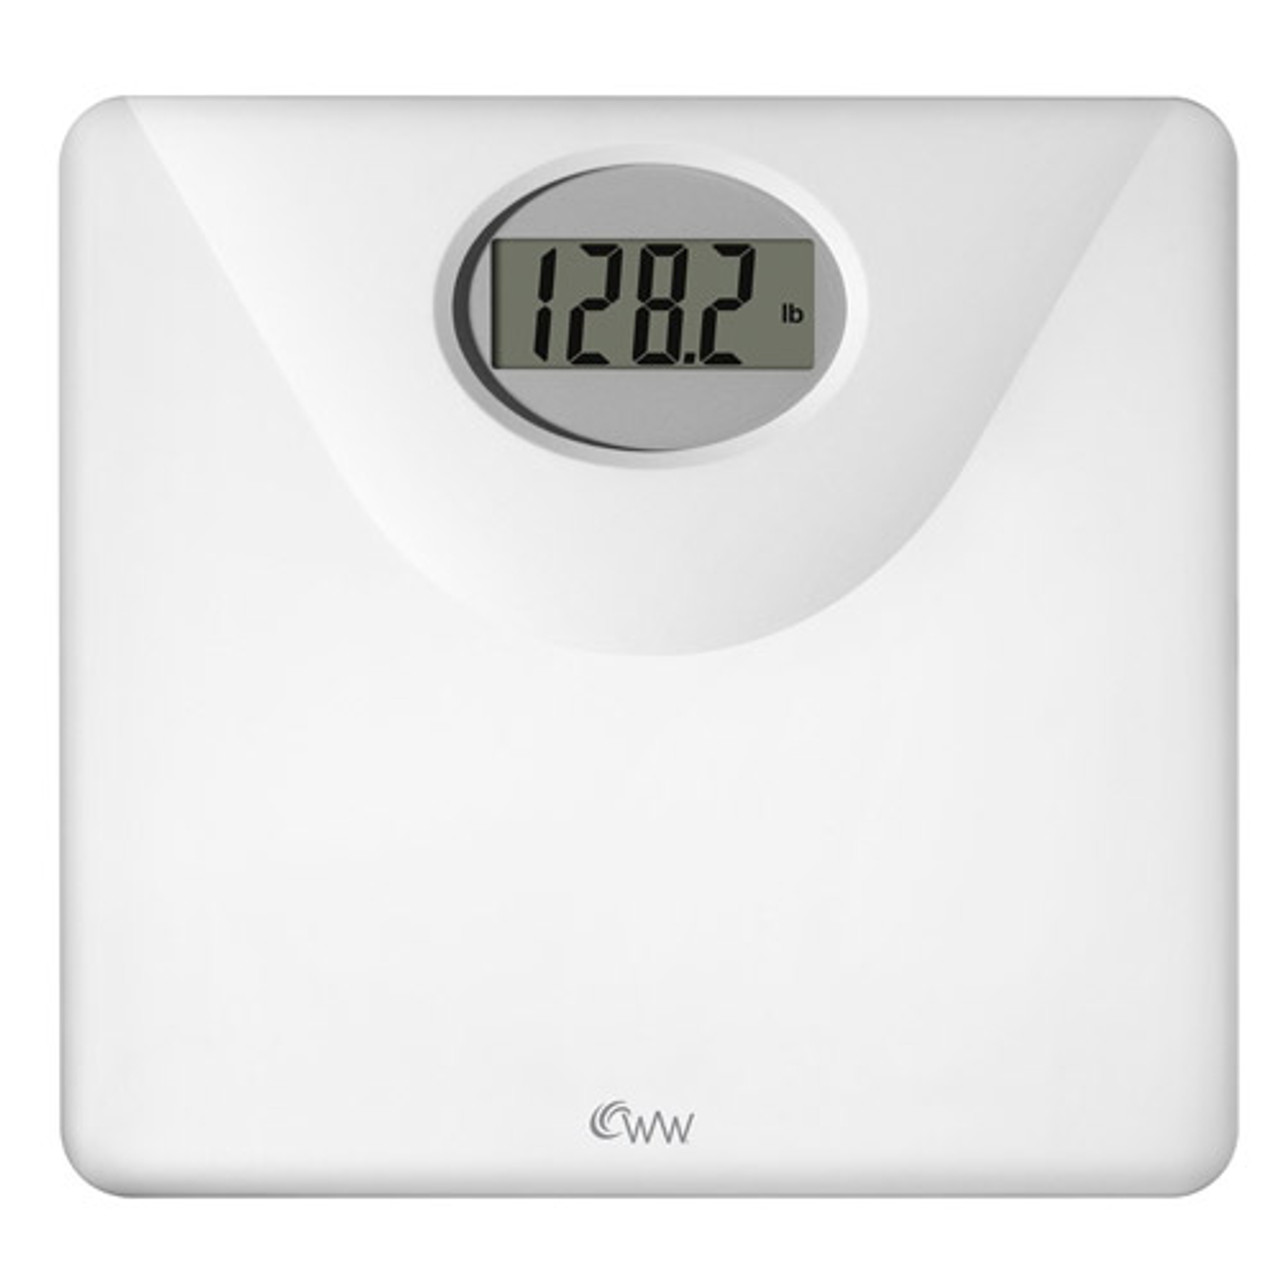 Weight Watcher Scale 